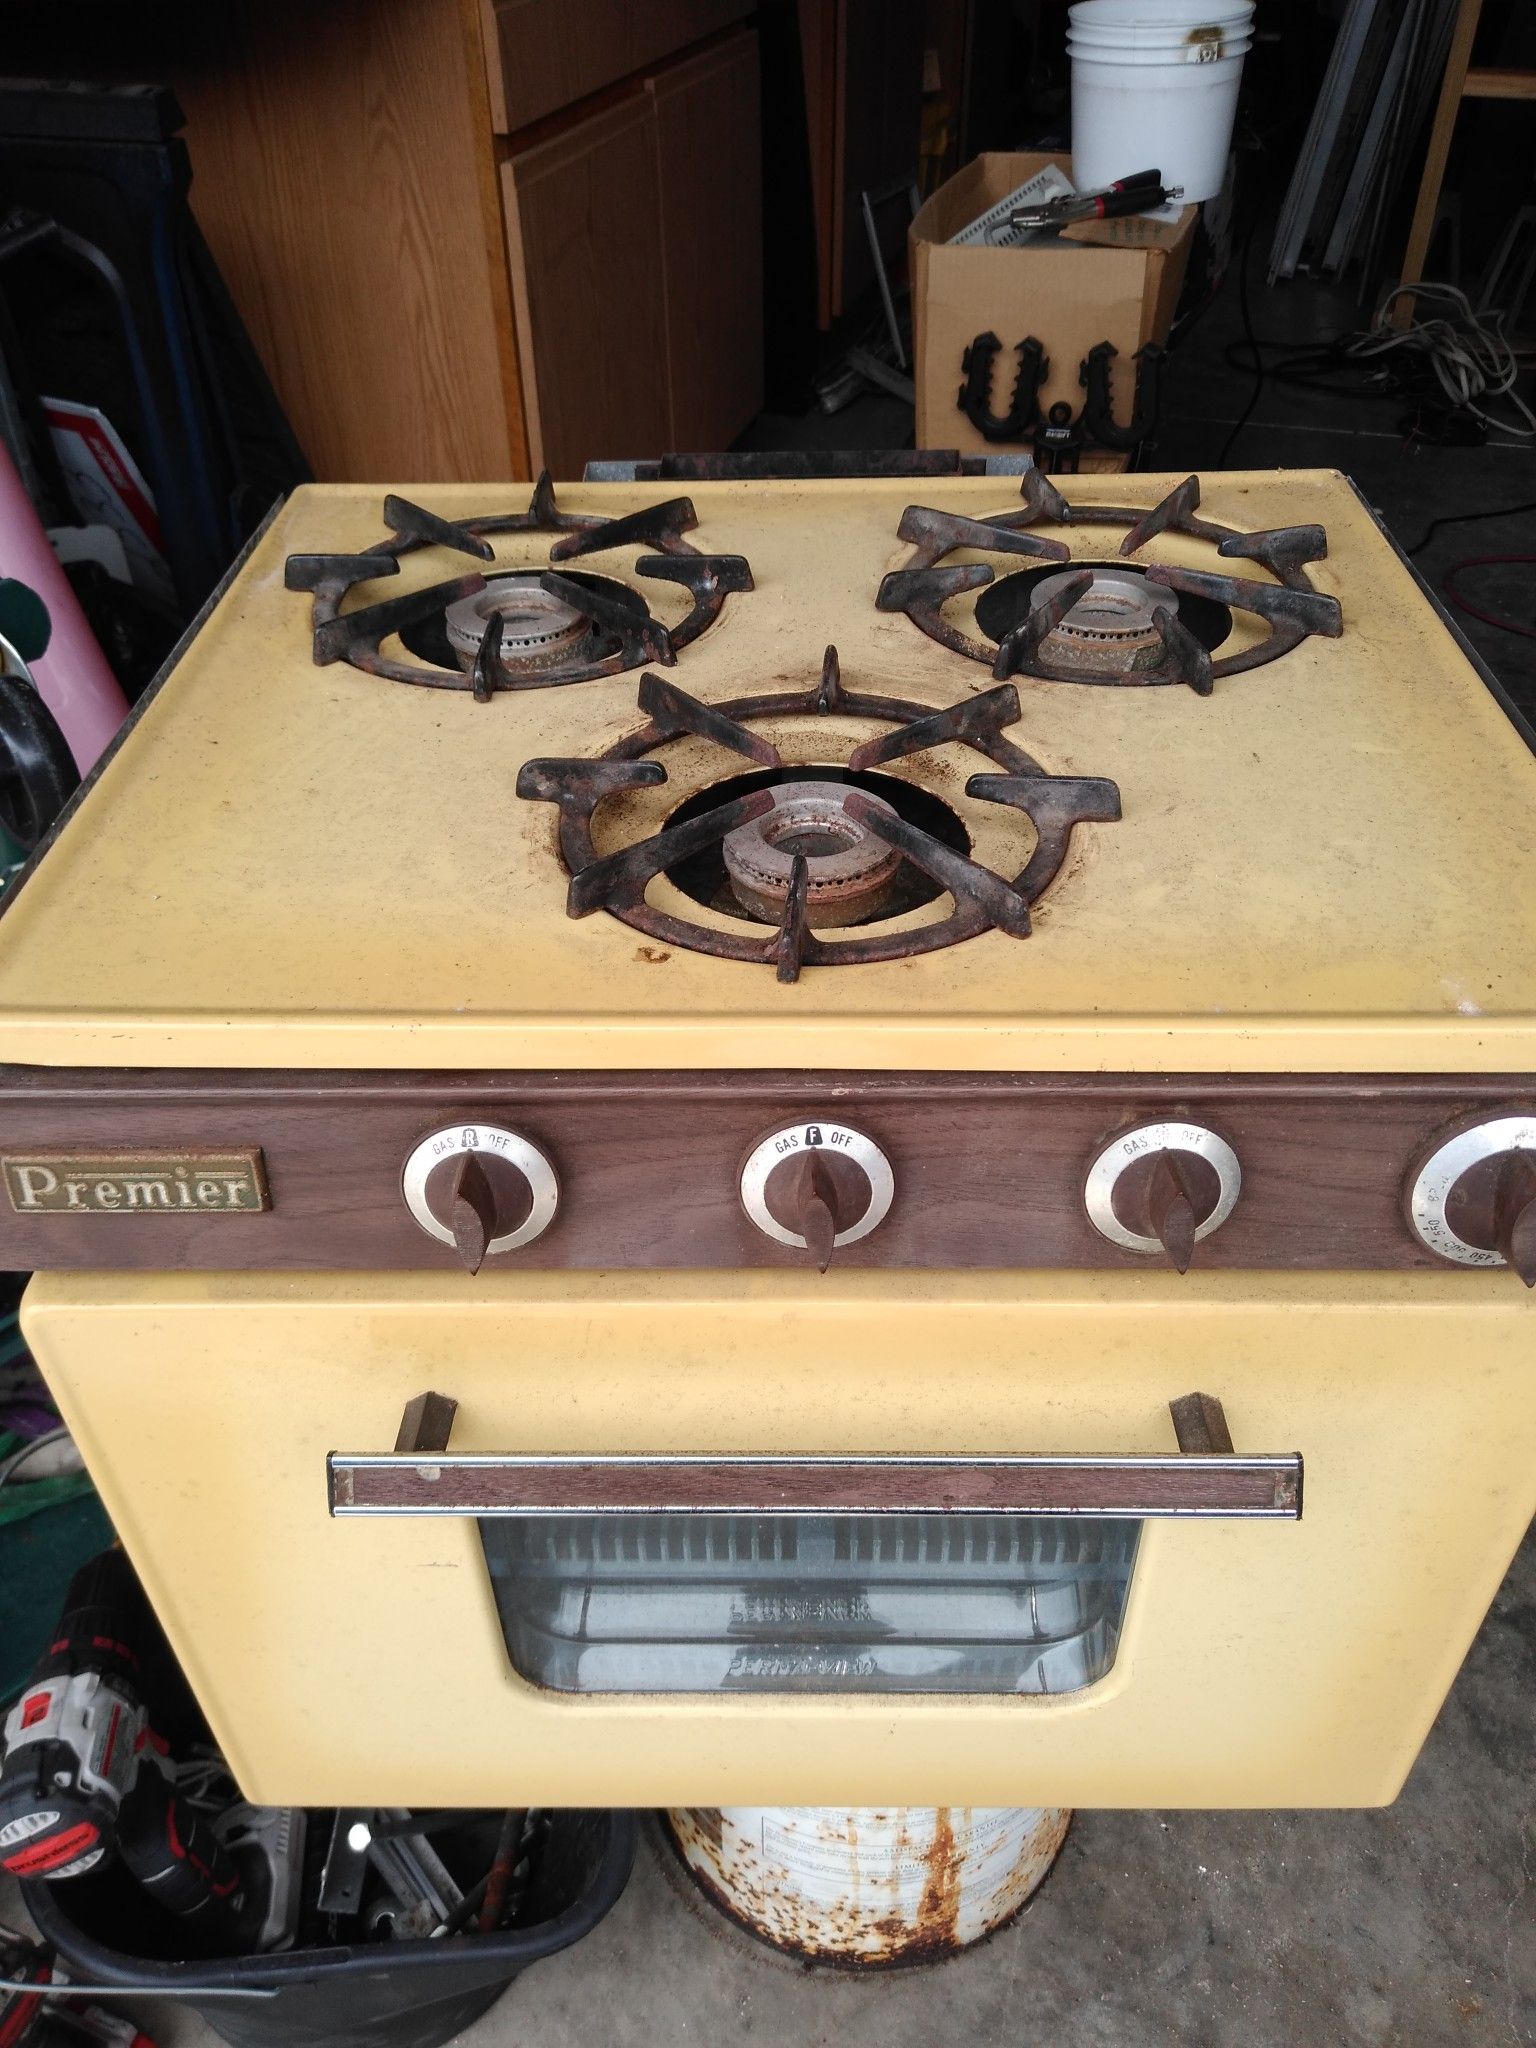 Vintage RV camper stove oven